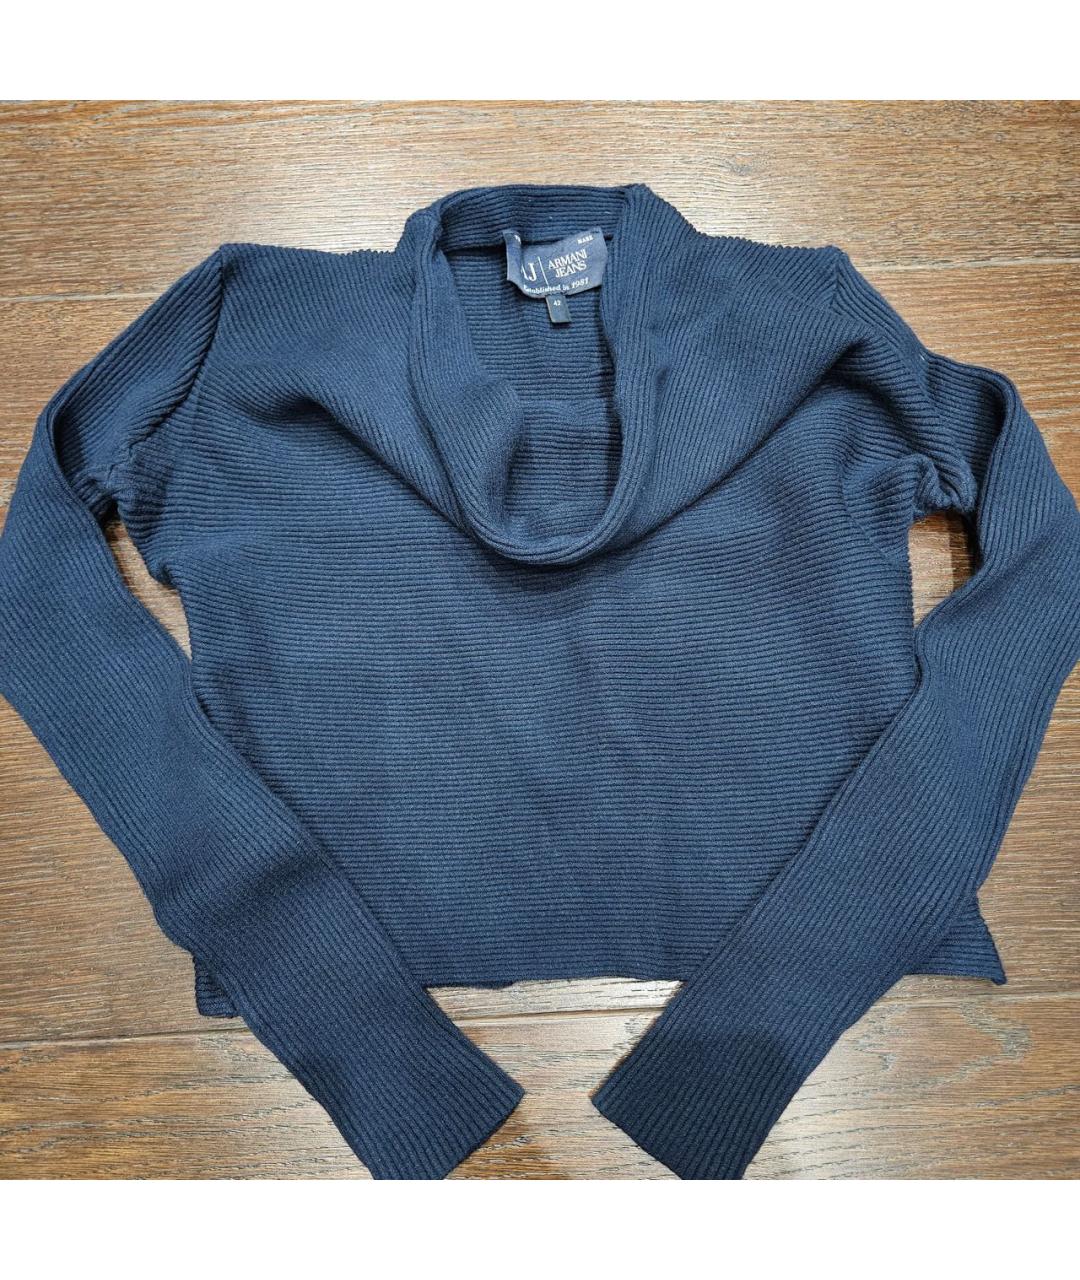 ARMANI JEANS Темно-синий хлопковый джемпер / свитер, фото 2